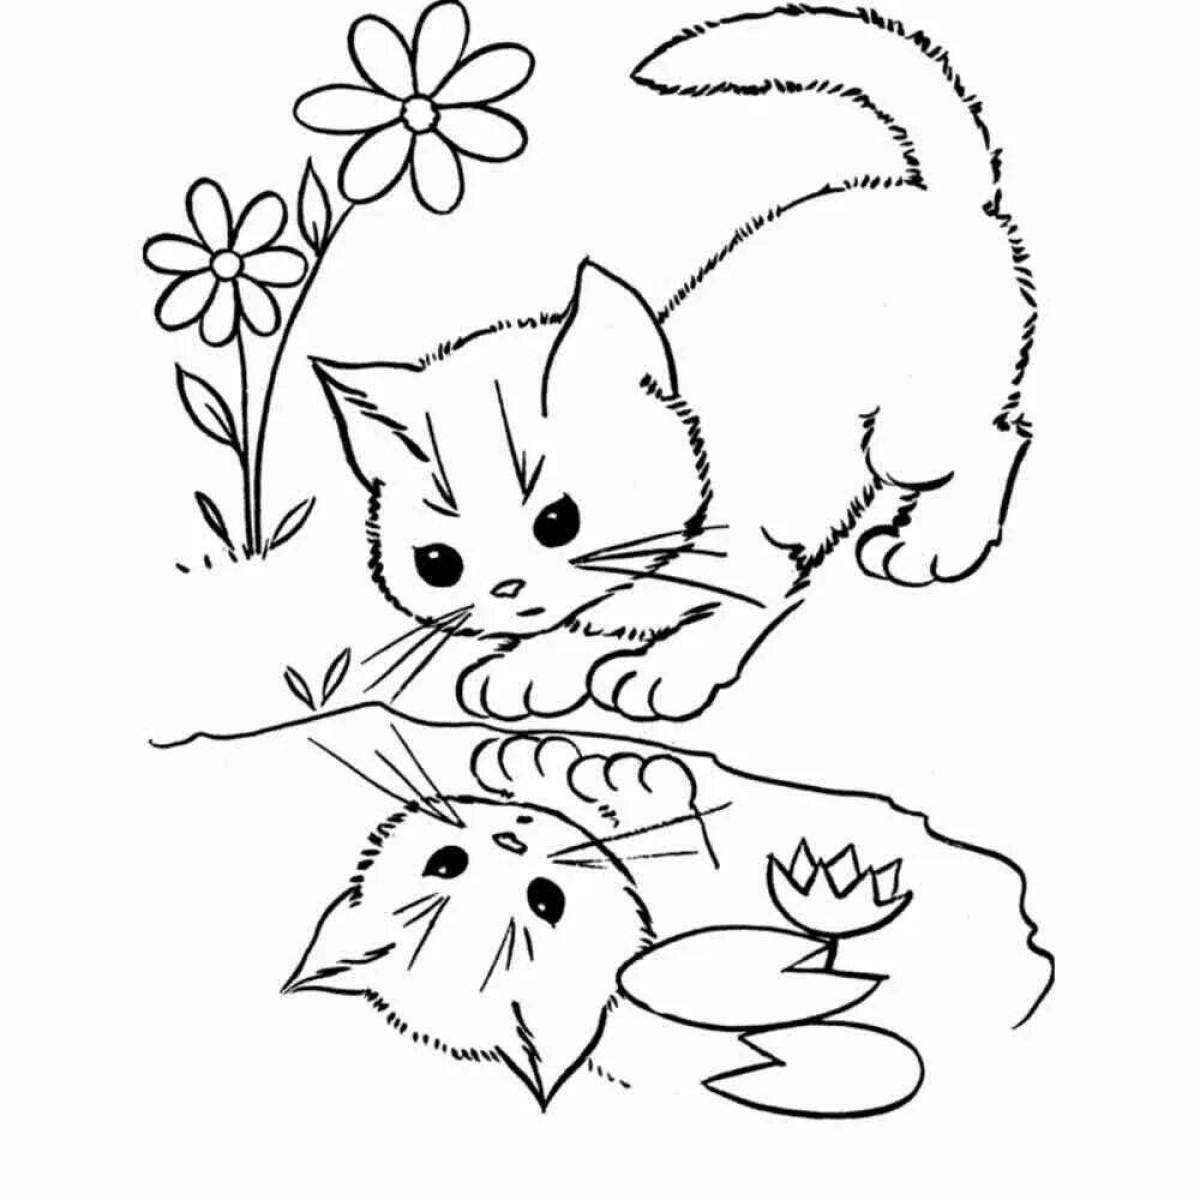 Пушистая раскраска рисунок кошки